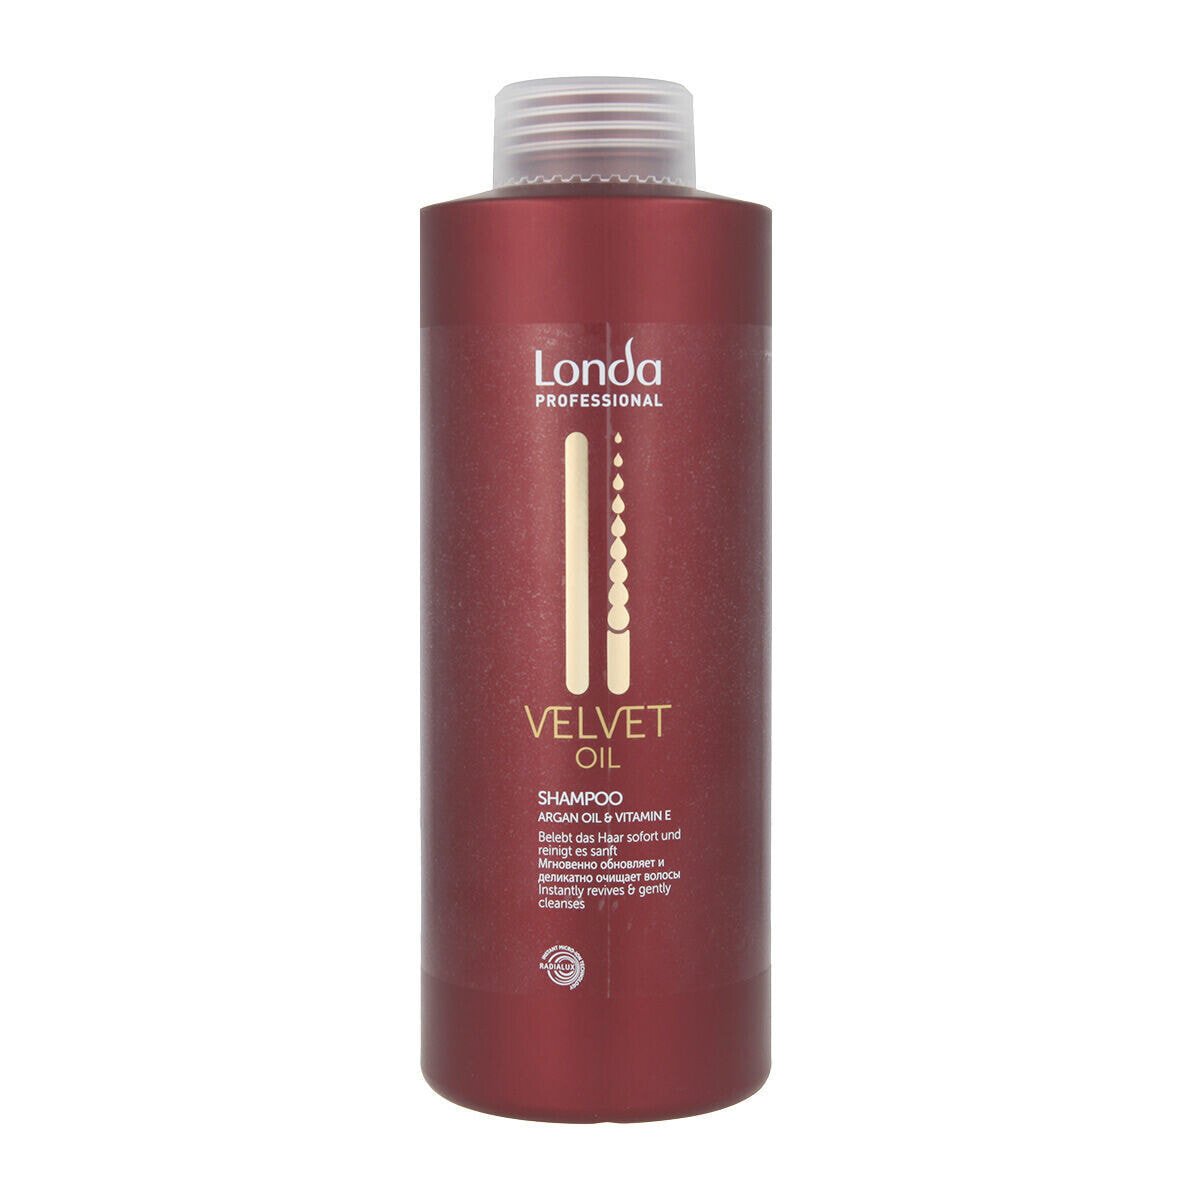 Разглаживающий волосы шампунь Londa Professional Velvet Oil 1 L